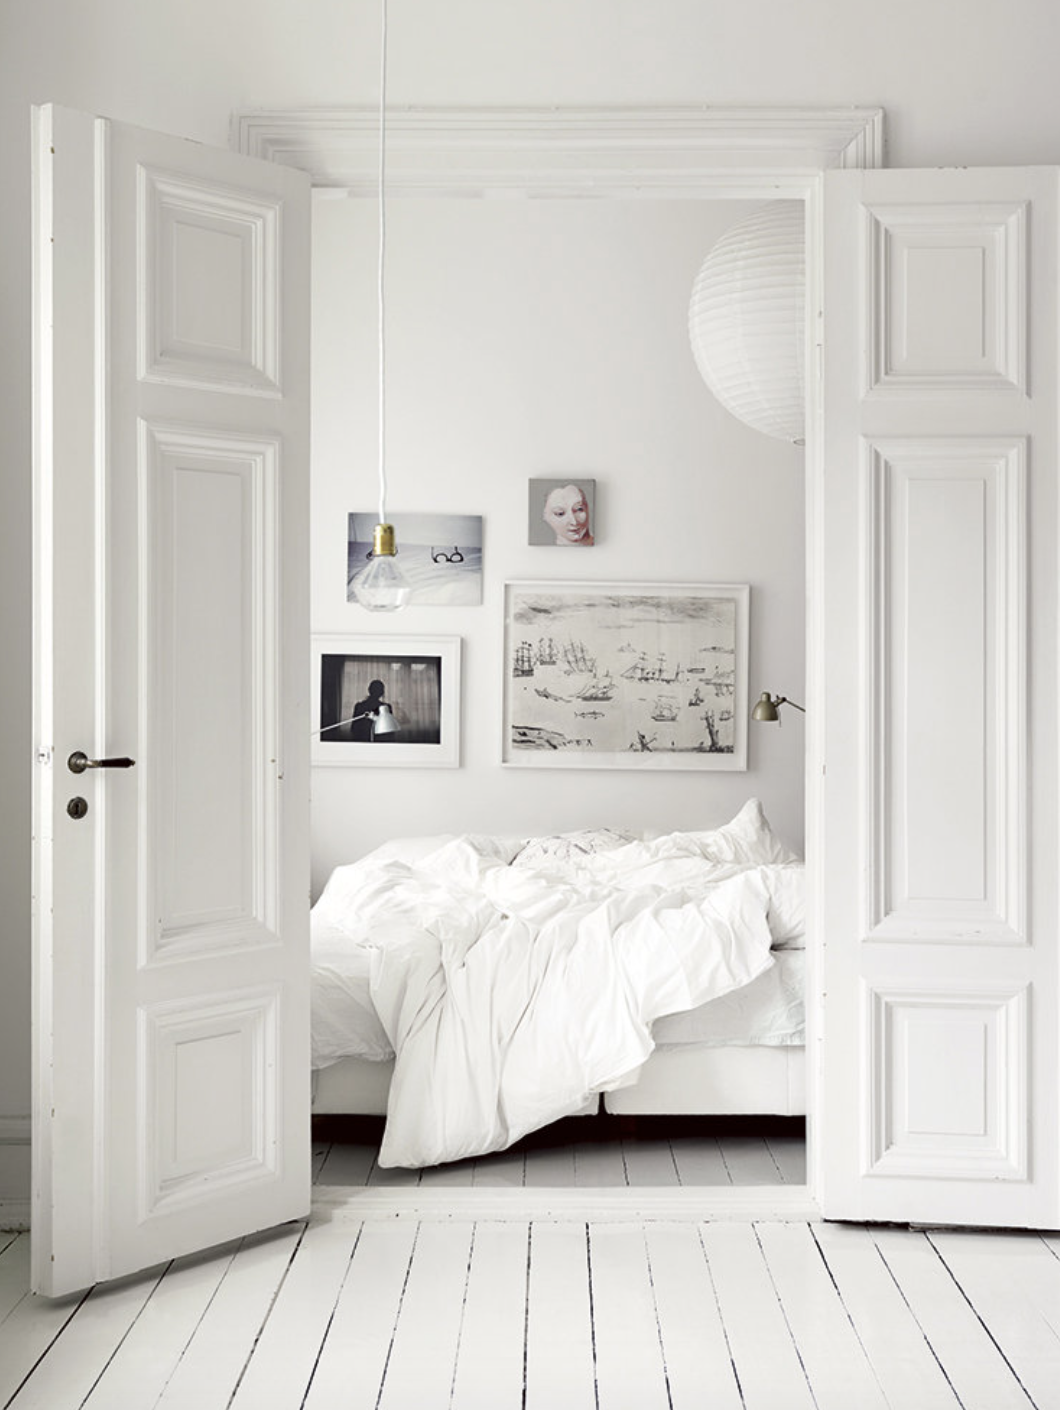 puertas abiertas en blanco que dan a un dormitorio blanco con cuadros en la pared